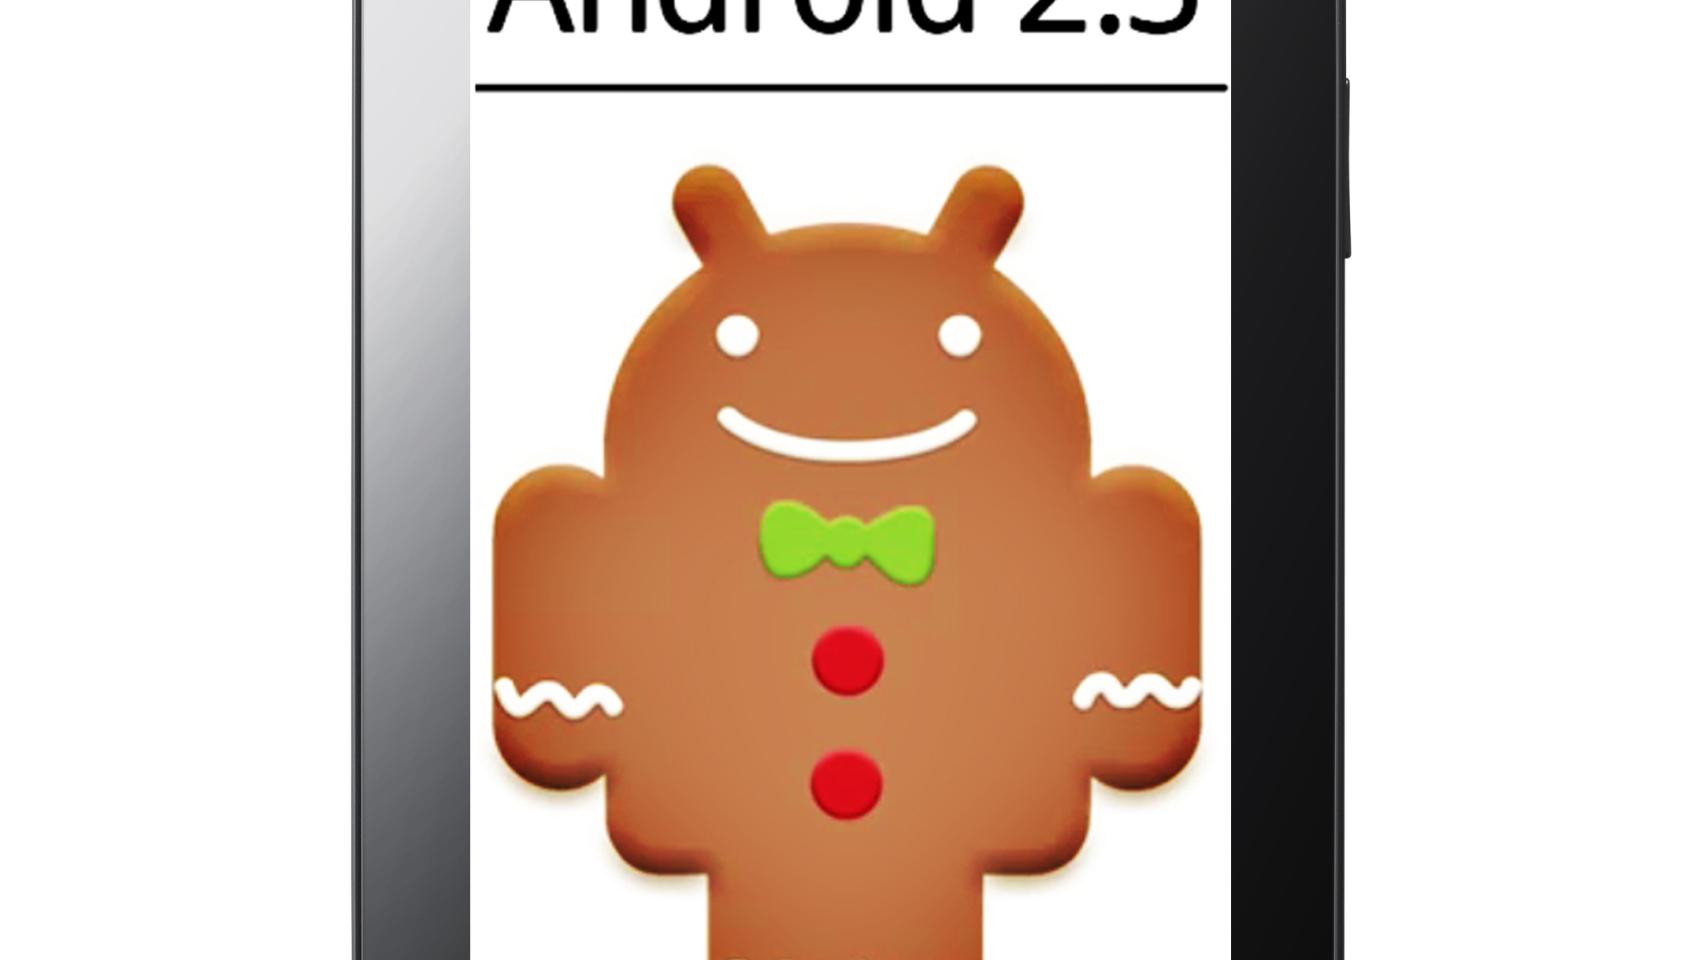 Actualización a Gingerbread 2.3.3 para Samsung Galaxy Tab por Kies